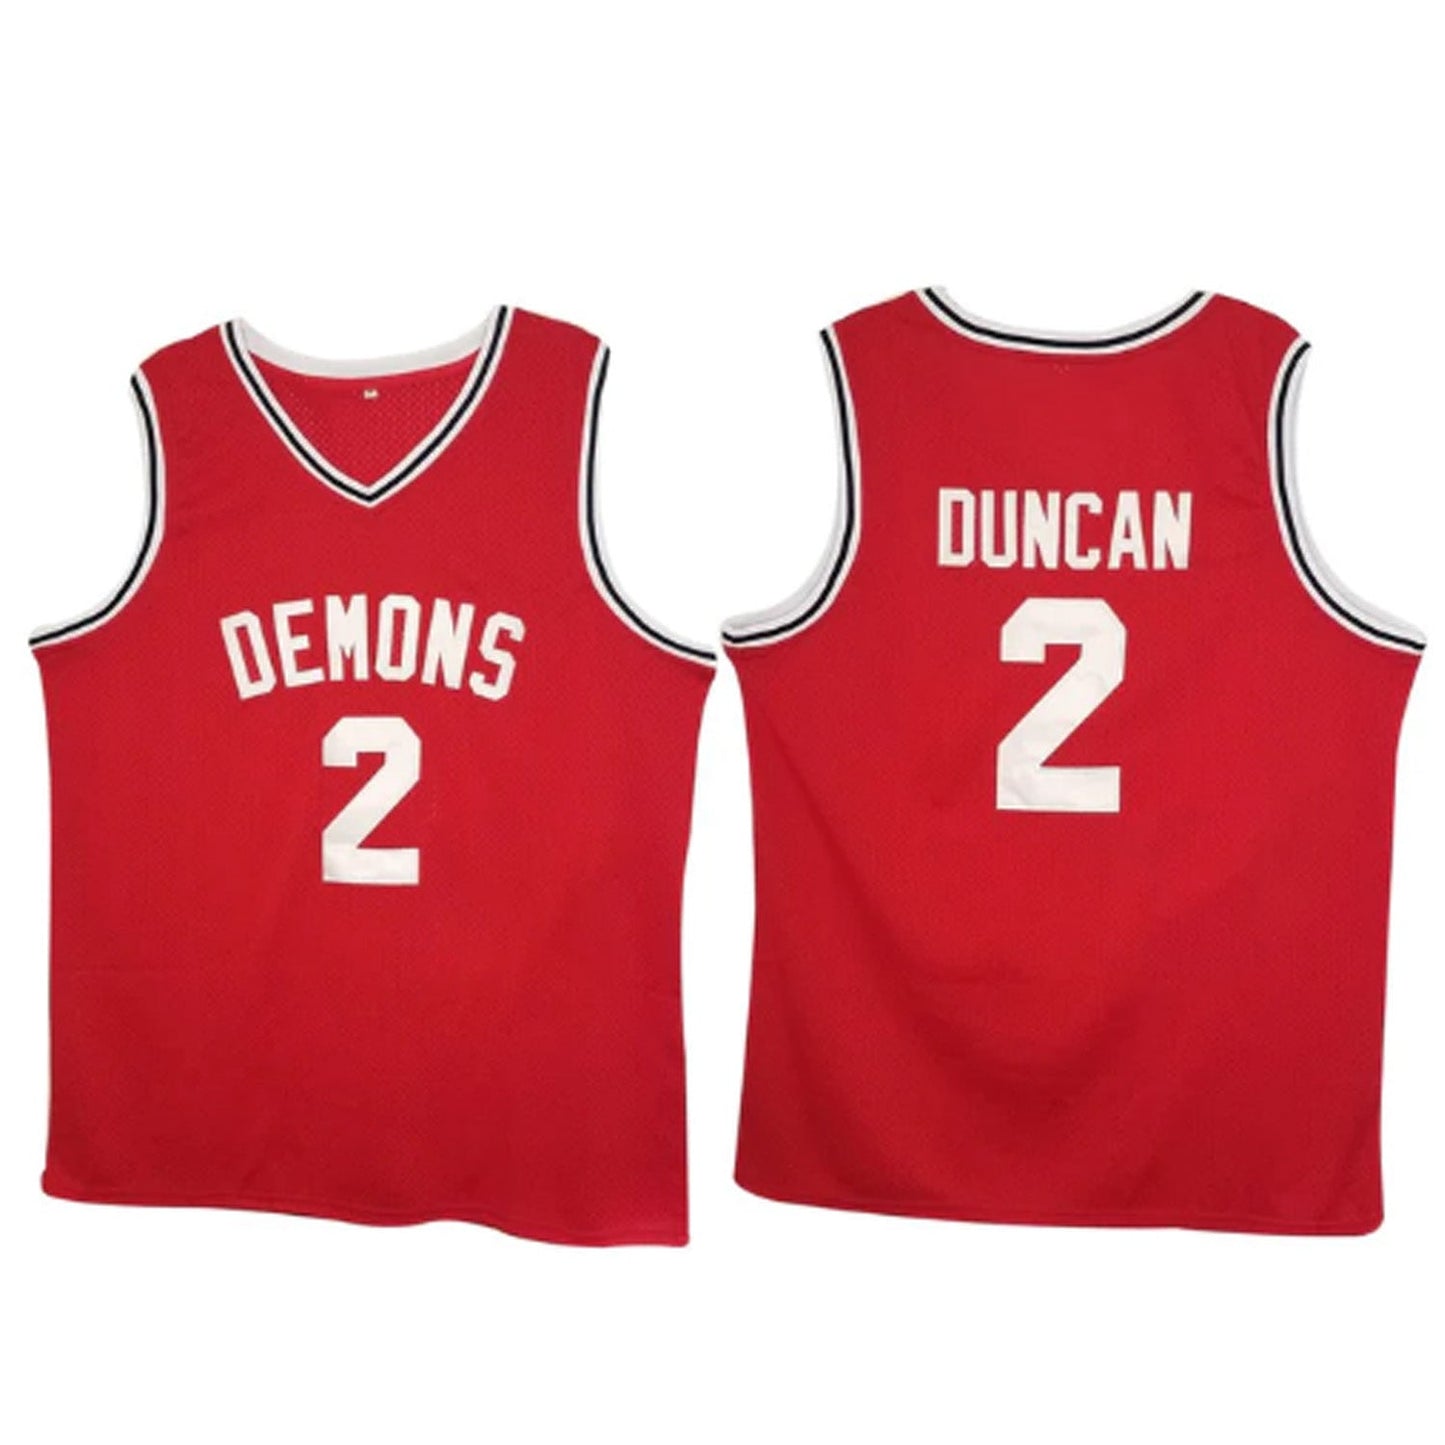 Tim Duncan Demons High School 2 Jersey